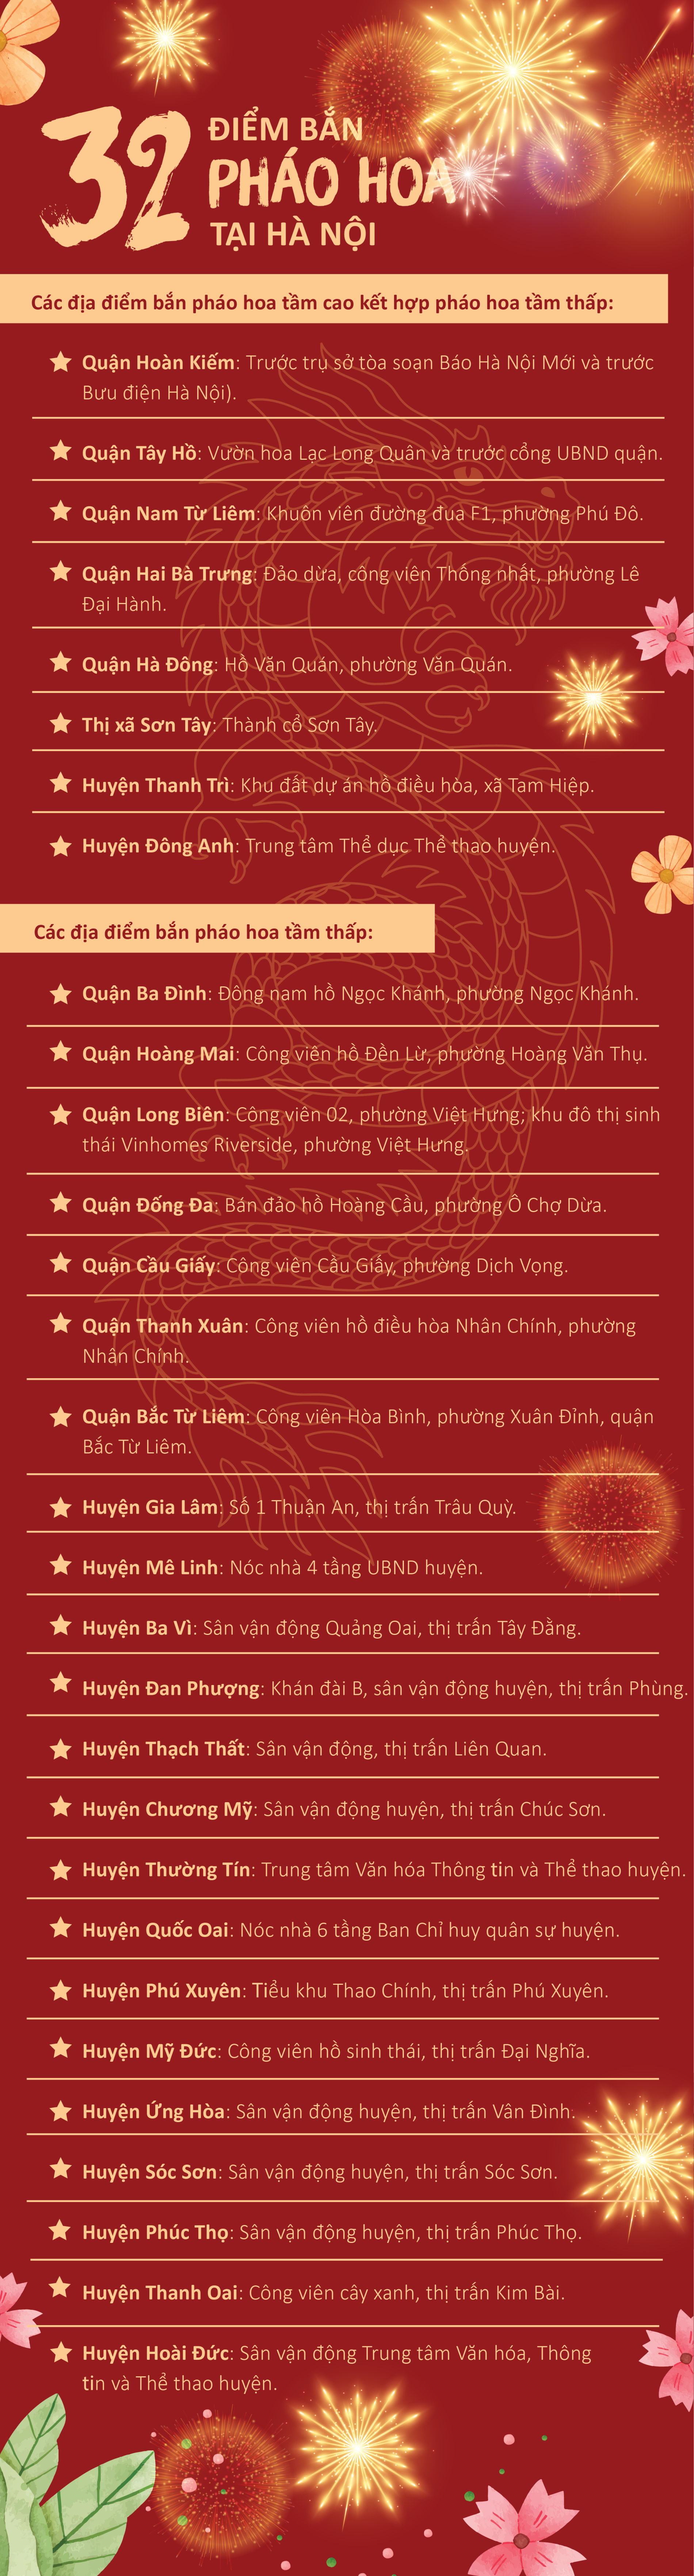 [Infographic] 32 điểm bắn pháo hoa ở Hà Nội đêm giao thừa Tết Giáp Thìn - Ảnh 1.